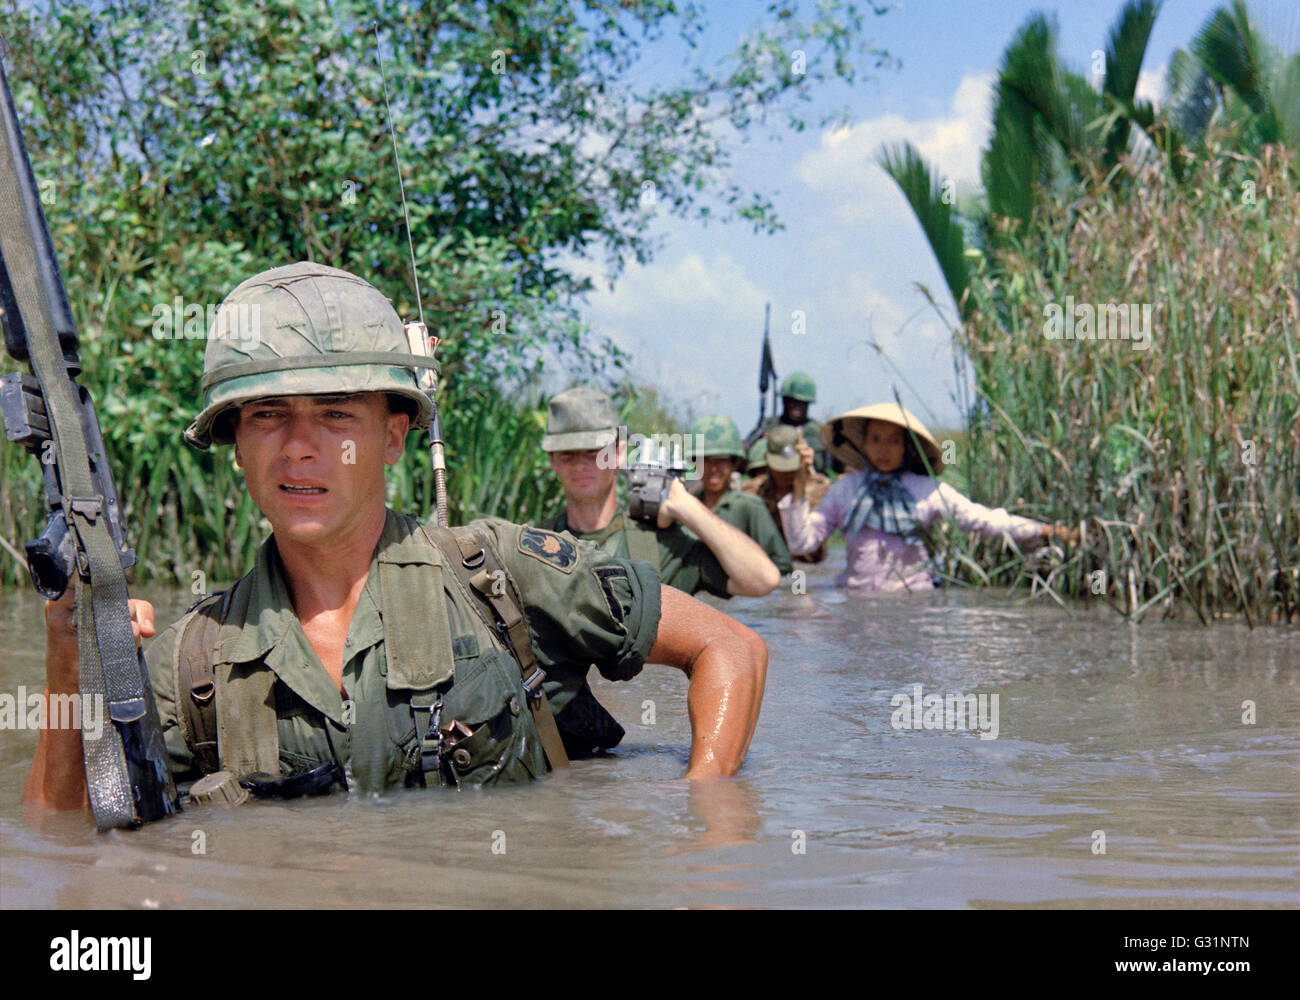 US-Armee Soldaten PFC Fred Greenleaf, mit C Company, 3. Bataillon, 7. Infanterie-Division, 199. Light Infantry Brigade, überquert eine tiefe Bewässerungskanal zusammen mit Mitgliedern der 5. ARVN Ranger Gruppe auf dem Weg zu einem Vietcong kontrollierten Dorf während des Betriebs klingelte Dong 21. November 1967 in Cat Lai, Südvietnam. Stockfoto